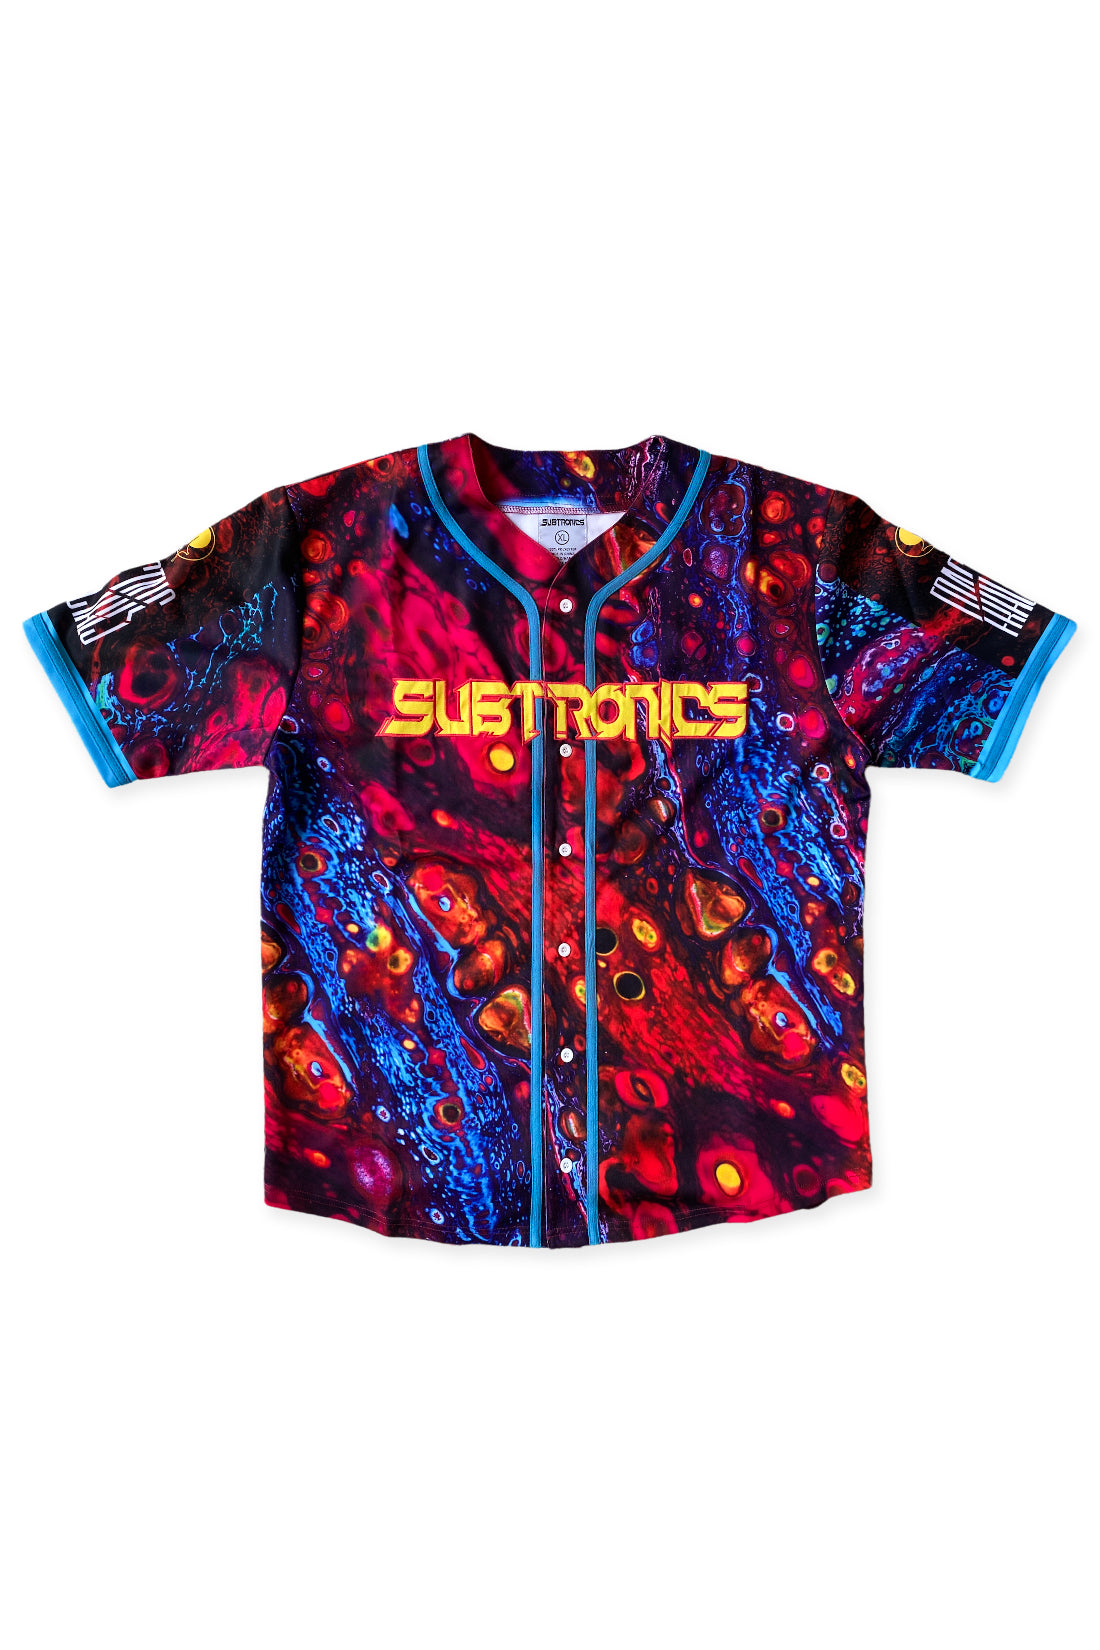 Subtronics - Paint - Baseball Jersey